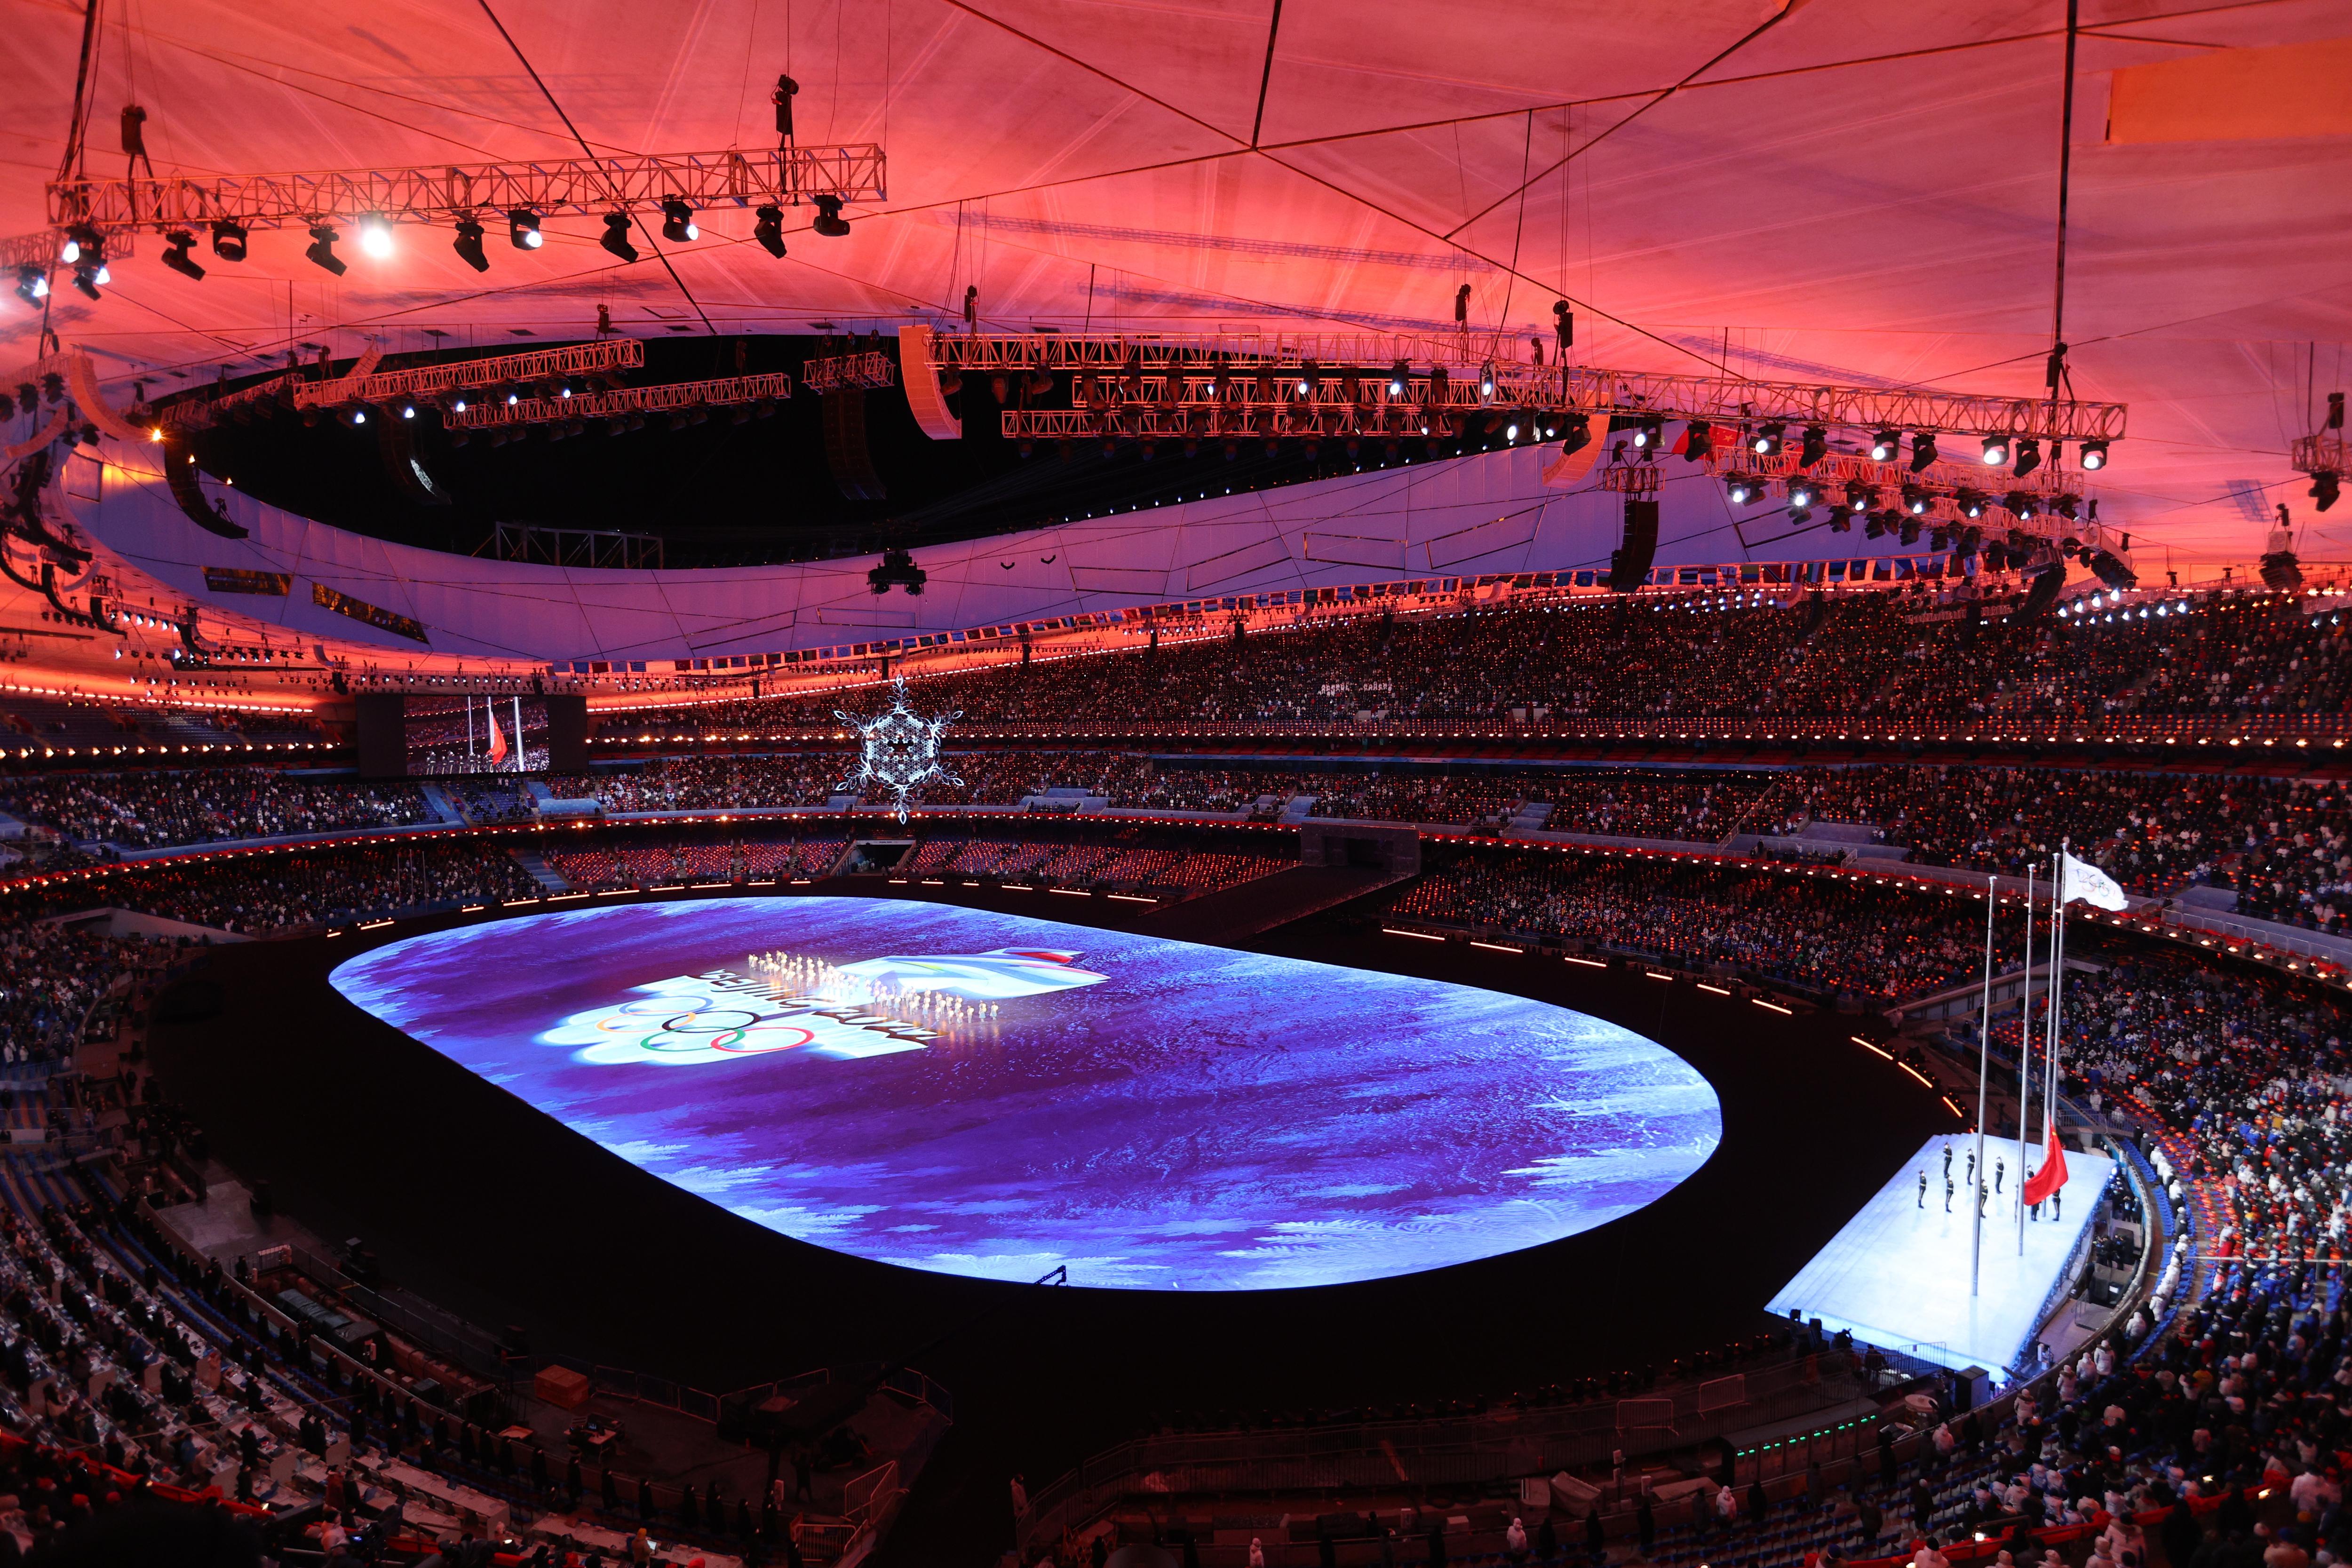 Где проходит закрытие игр будущего. Стадион Птичье гнездо в Пекине Олимпийские игры 2022. Закрытие Олимпийских игр 2022. Закрытие олимпиады 2022. Новый Олимпийский.